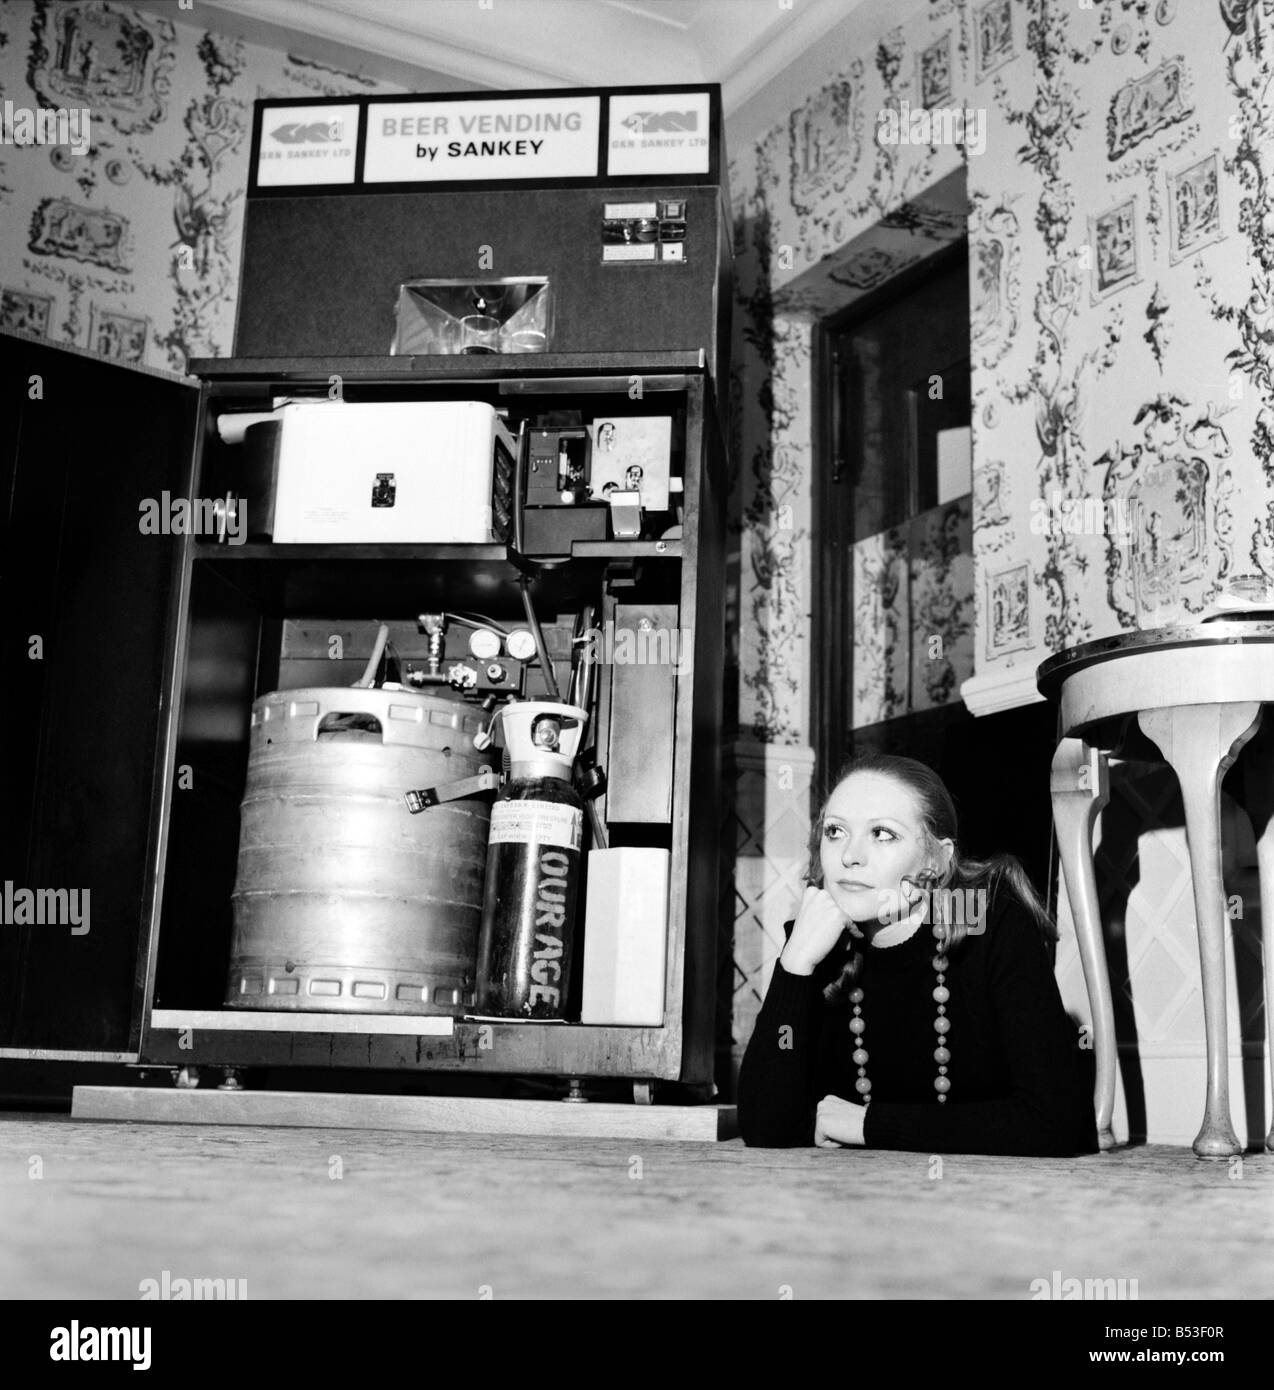 Invenzioni: Gran Bretagna il primo frigorifero automatico birra distributore automatico è stato dimostrato dalla birreria divisione di GKN Sankey Ltd., Bilston Staffs, a Quaglino's Bury Street, Londra. Donna con la parte anteriore del autobarmaid aperto che mostra la parte interna. Dicembre 1969 Z11595-001 Foto Stock